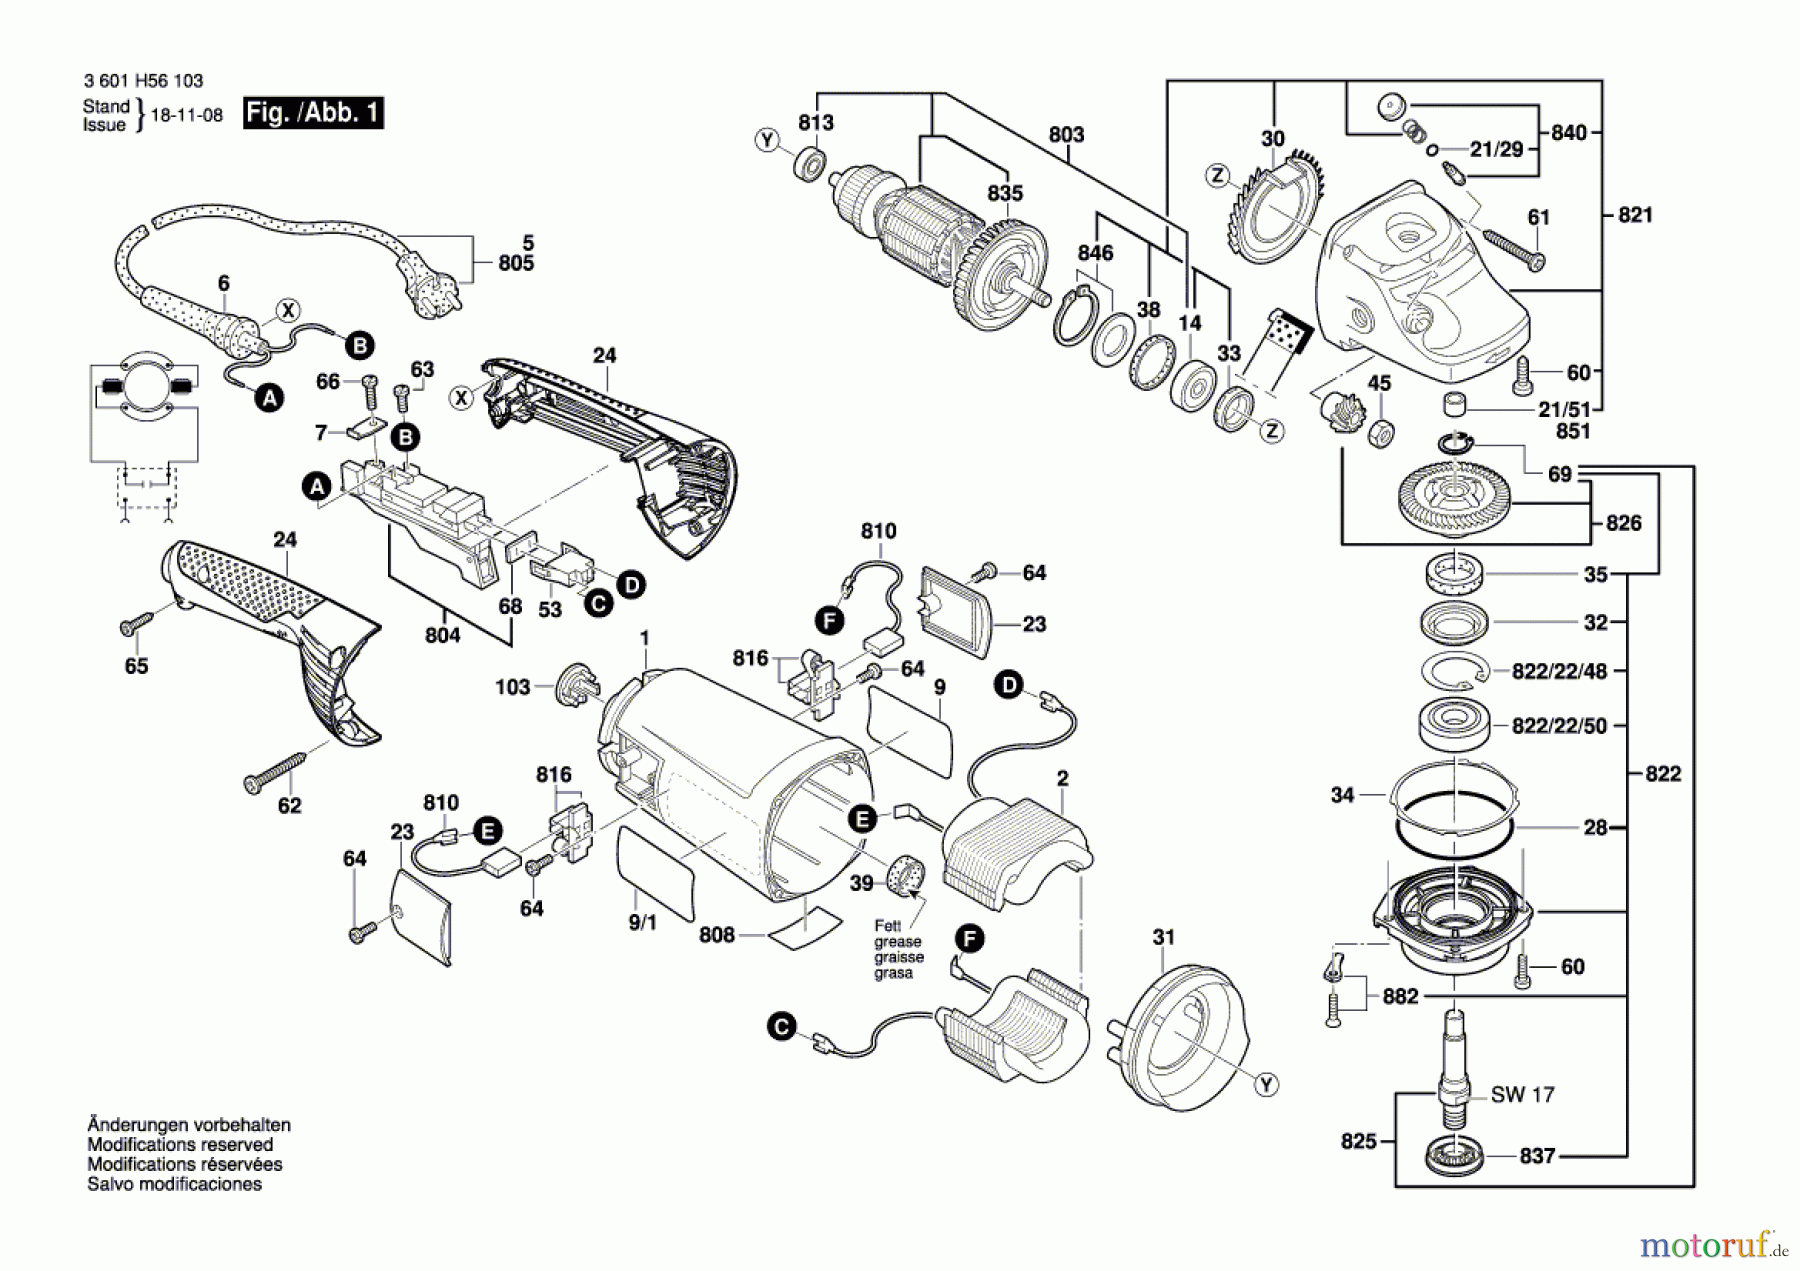  Bosch Werkzeug Winkelschleifer GWS 26-230 H Seite 1